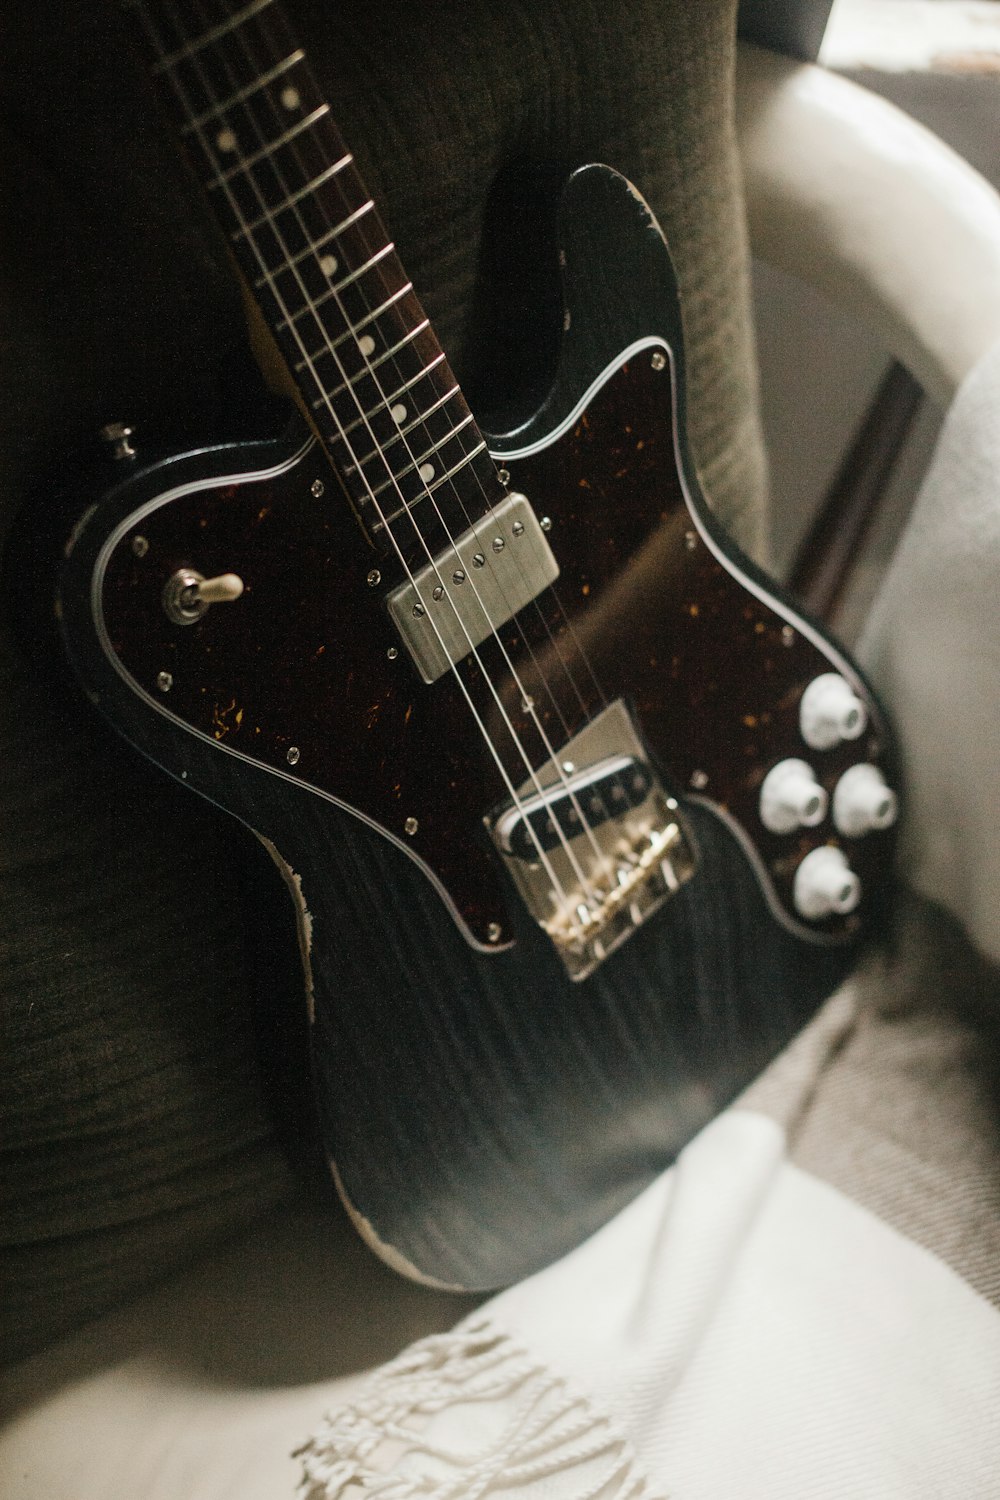 guitarra elétrica stratocaster preto e branco